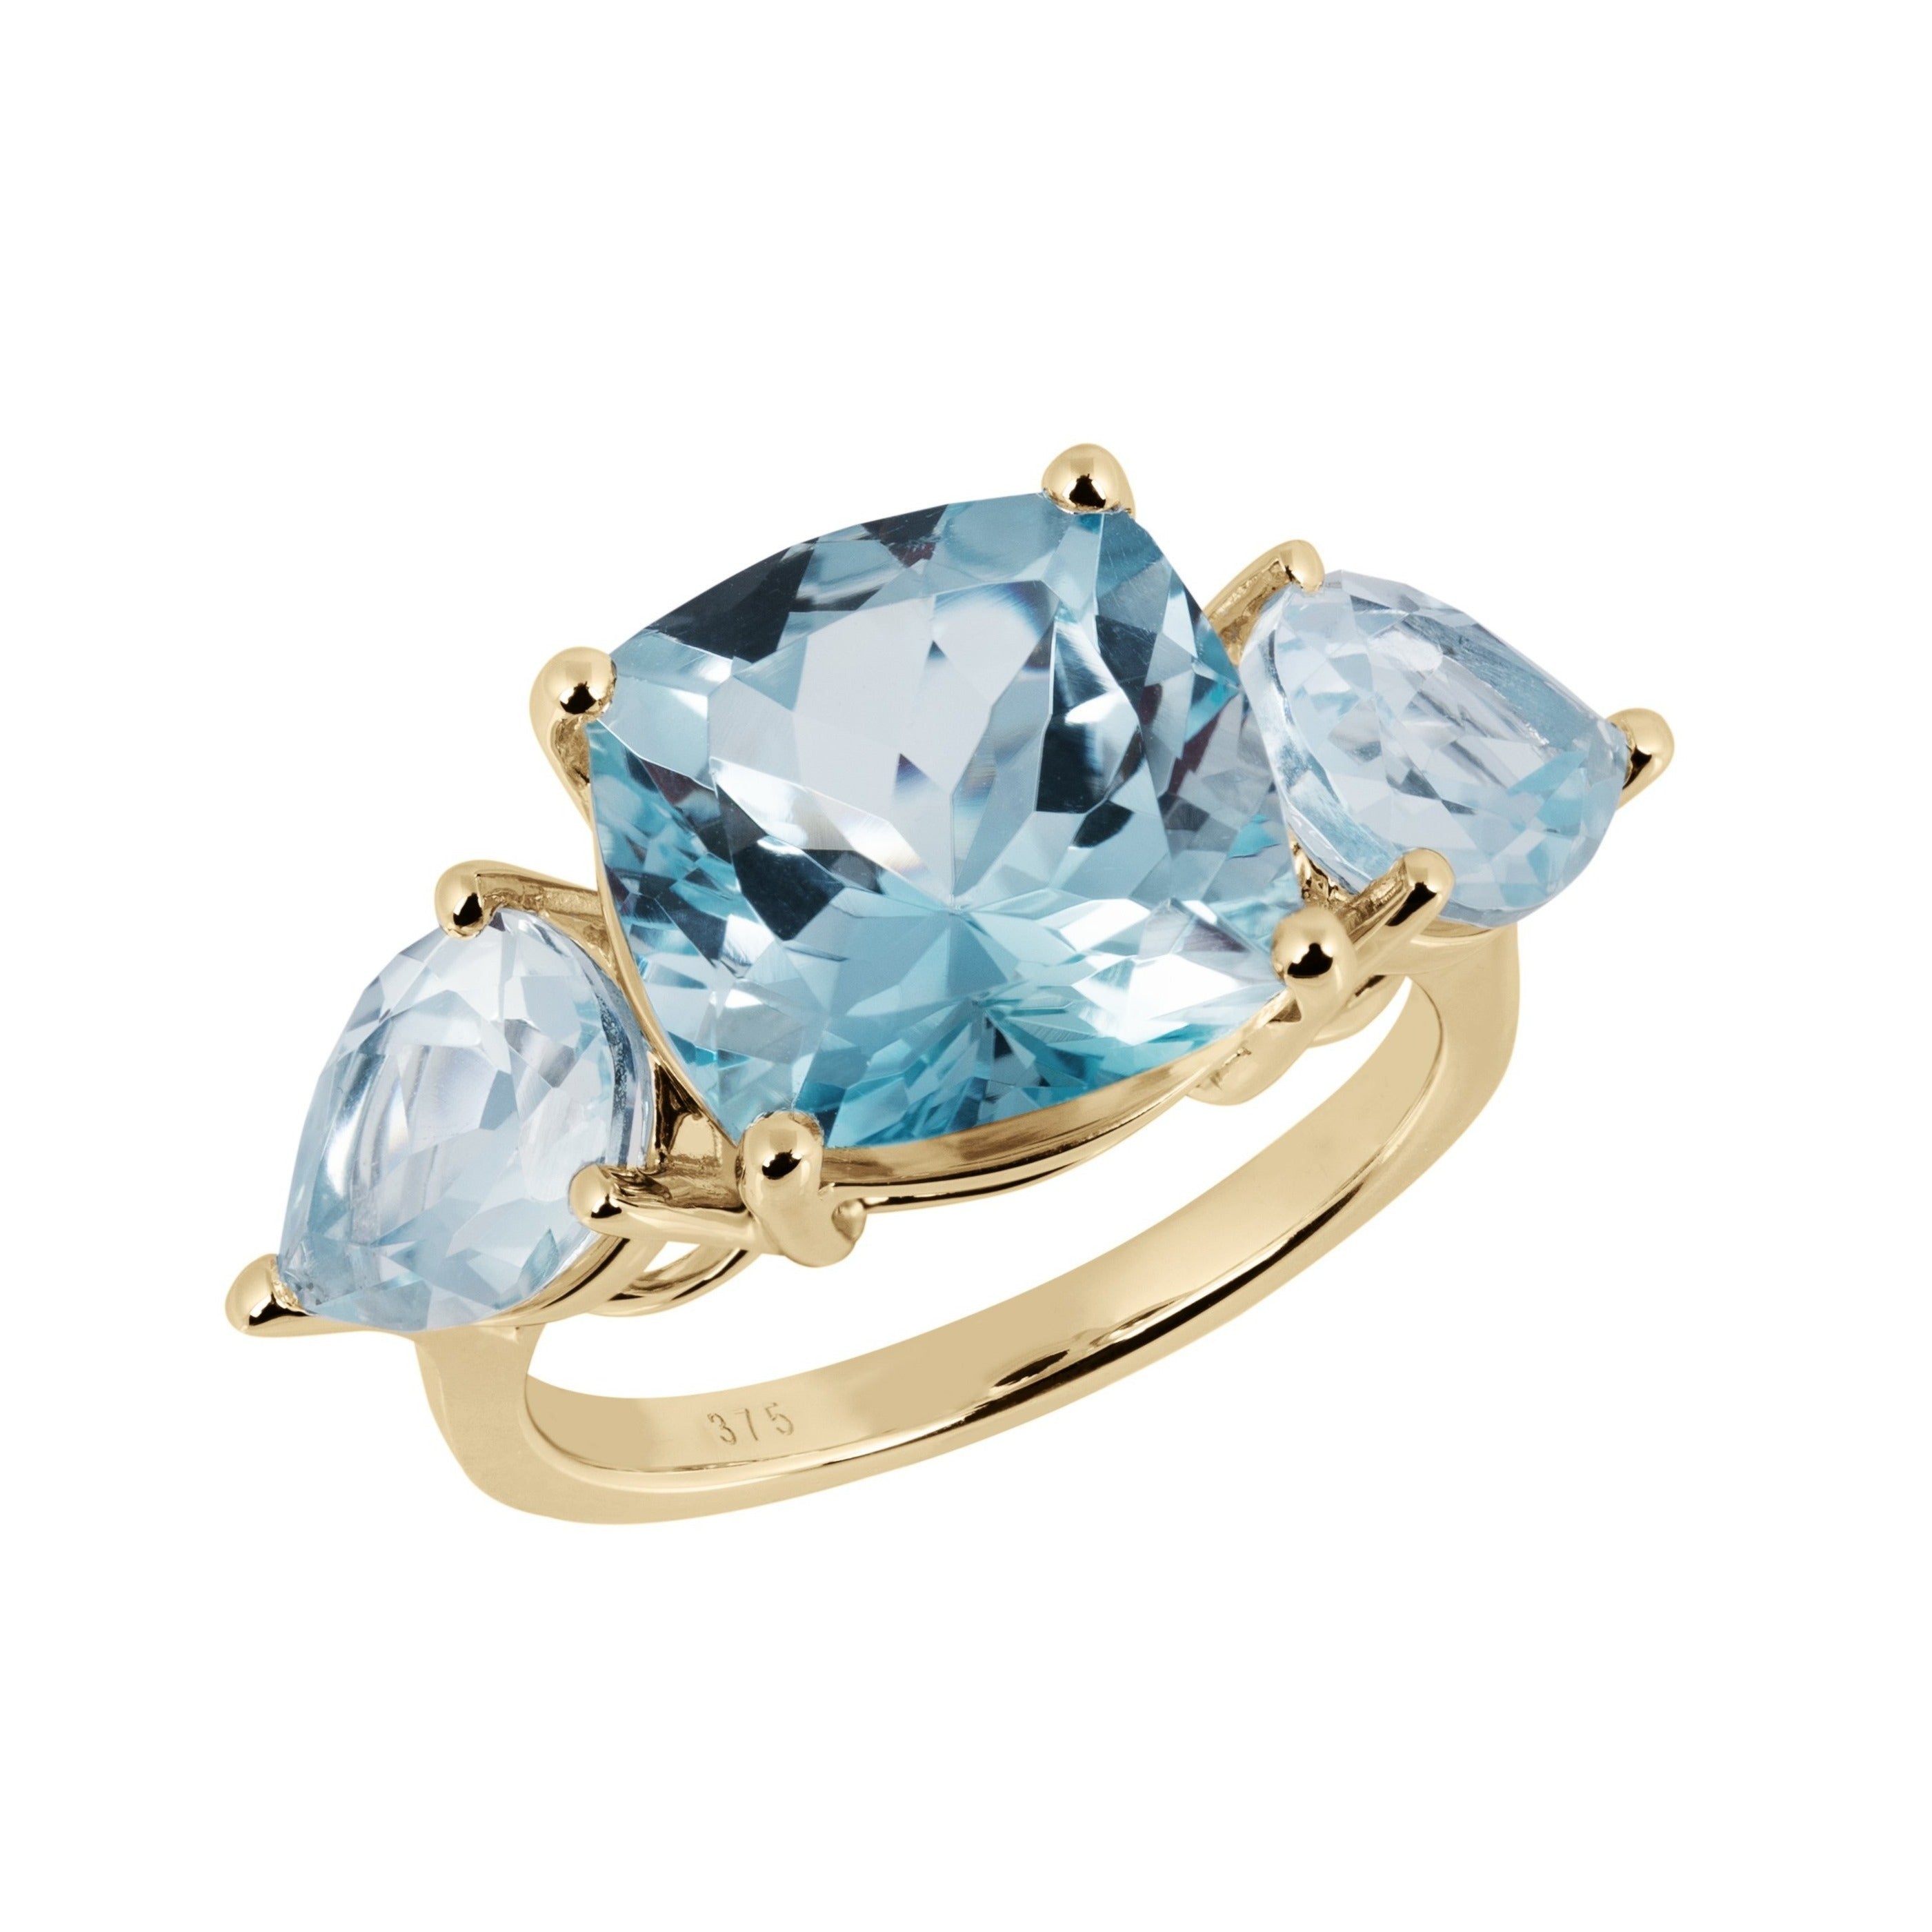 5.15ct natural prime aqua blue aquamarine diamonds ring 14kt – Avis Diamond  Galleries